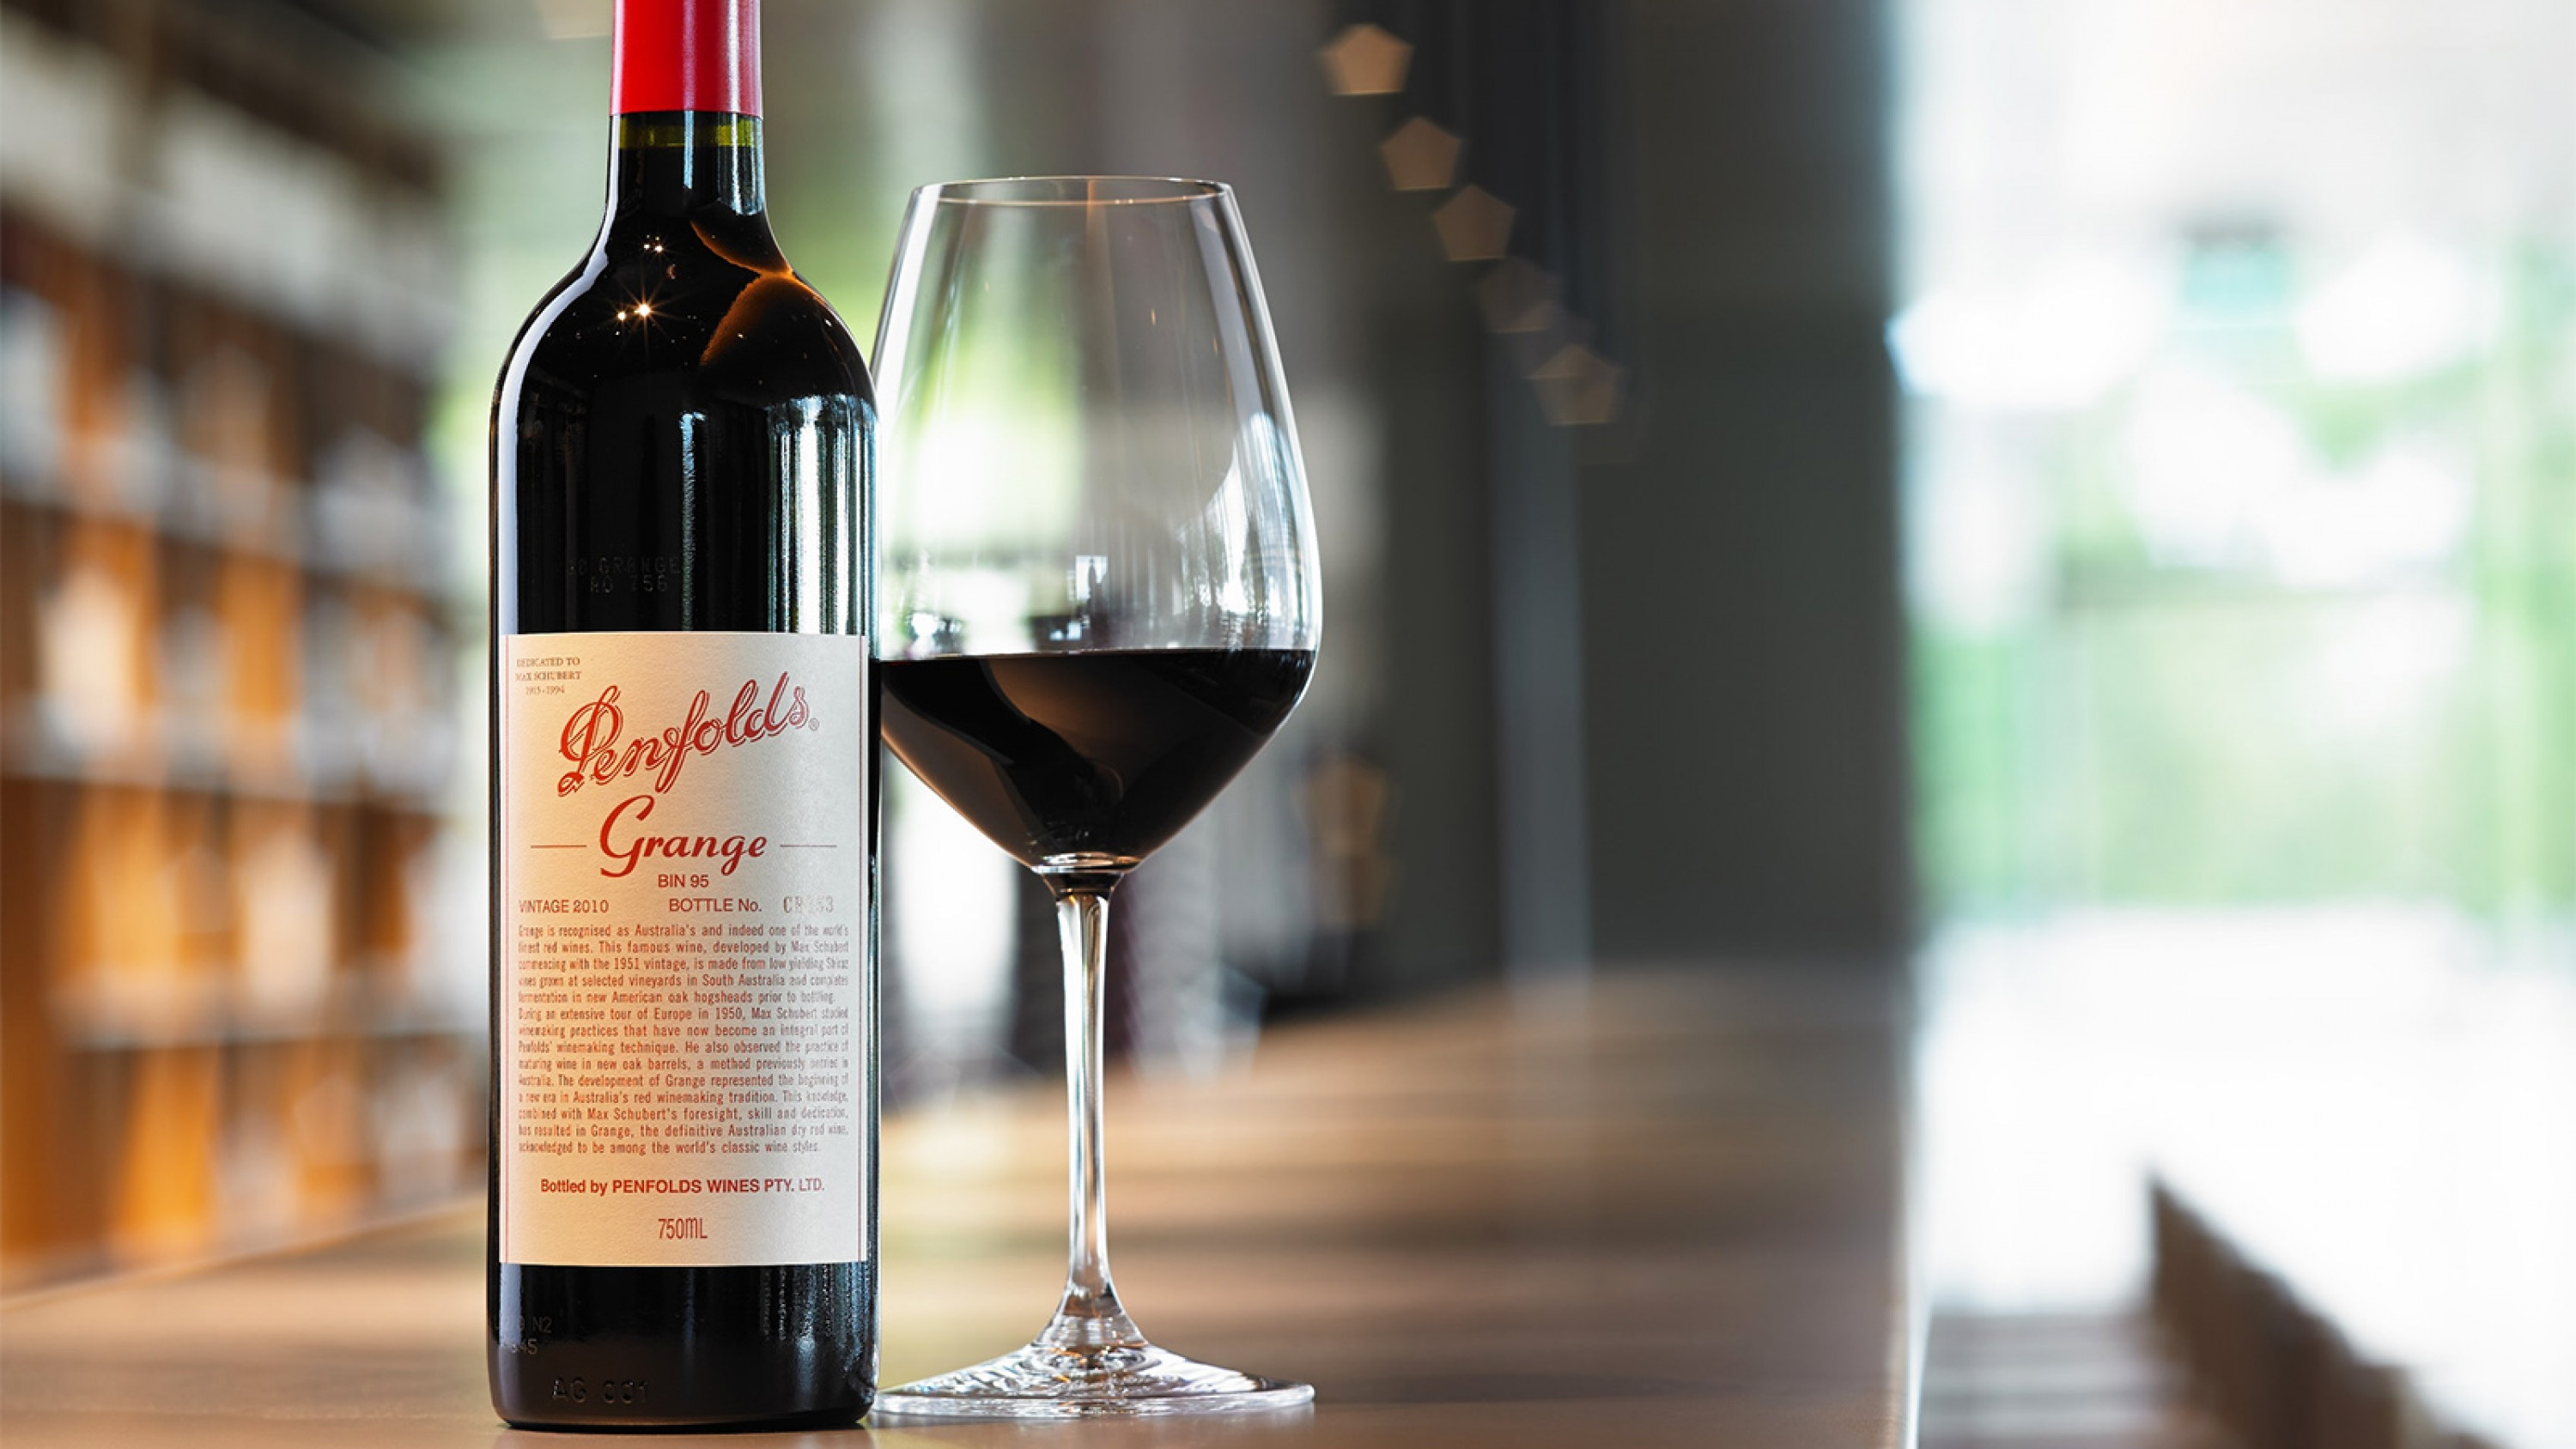 Gọi tên 4 loại rượu vang ngon nhất niềm Nam nước Úc - Grange Shiraz, thương hiệu Penfolds, vùng Adelaide